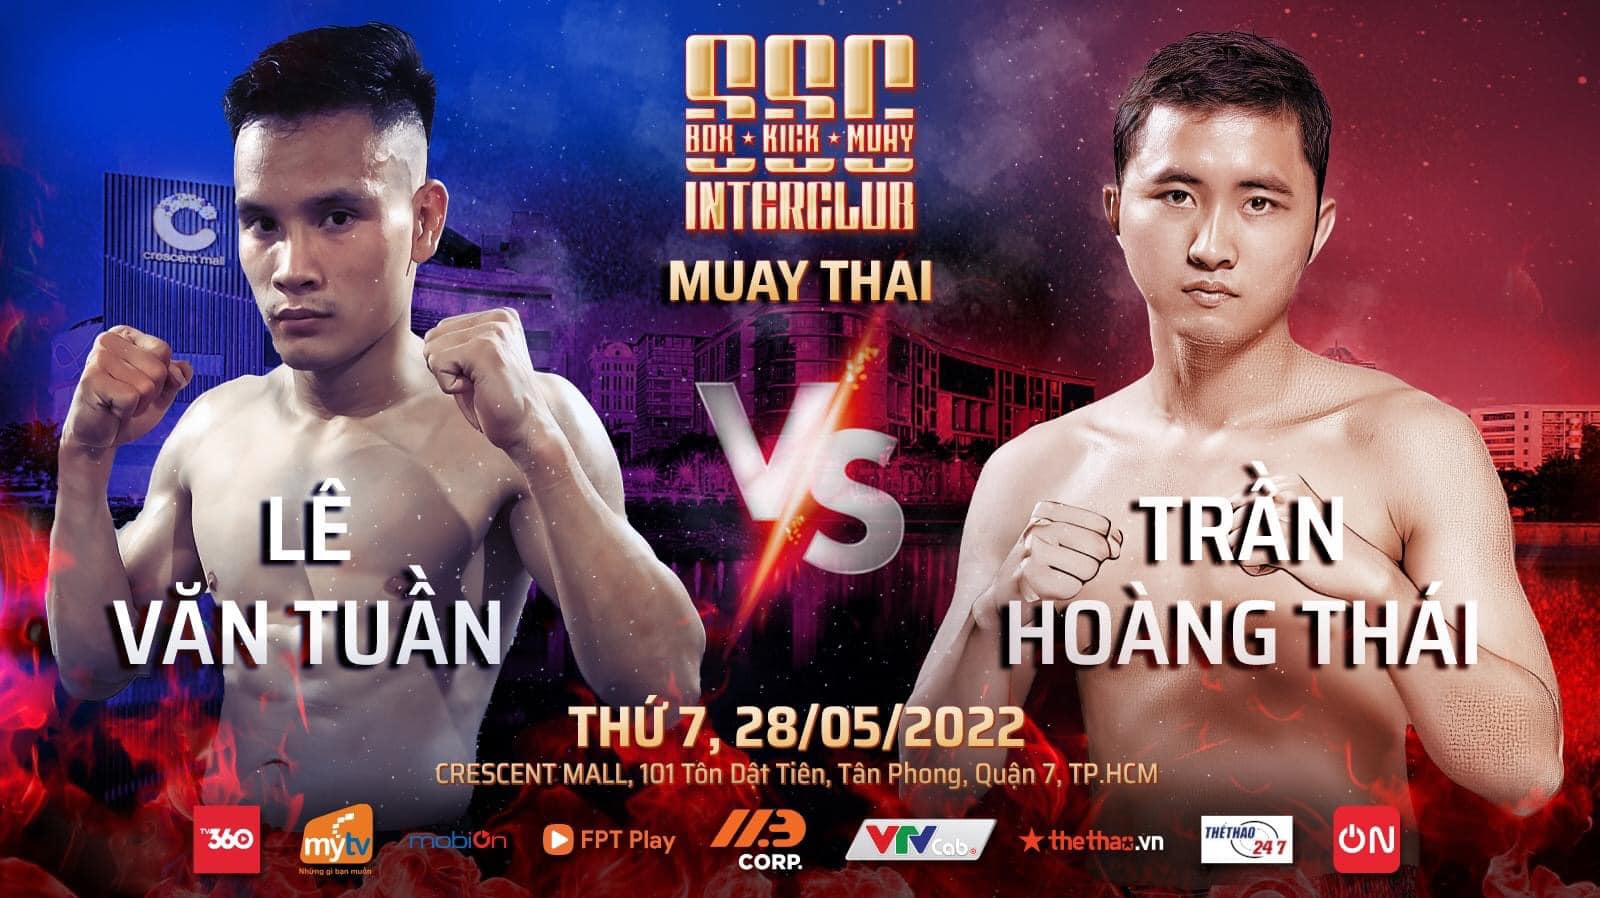 Sự kiện 3 môn võ Boxing, Kickboxing, Muay Thái tổ chức ở TPHCM ngày 28/5 - Ảnh 4